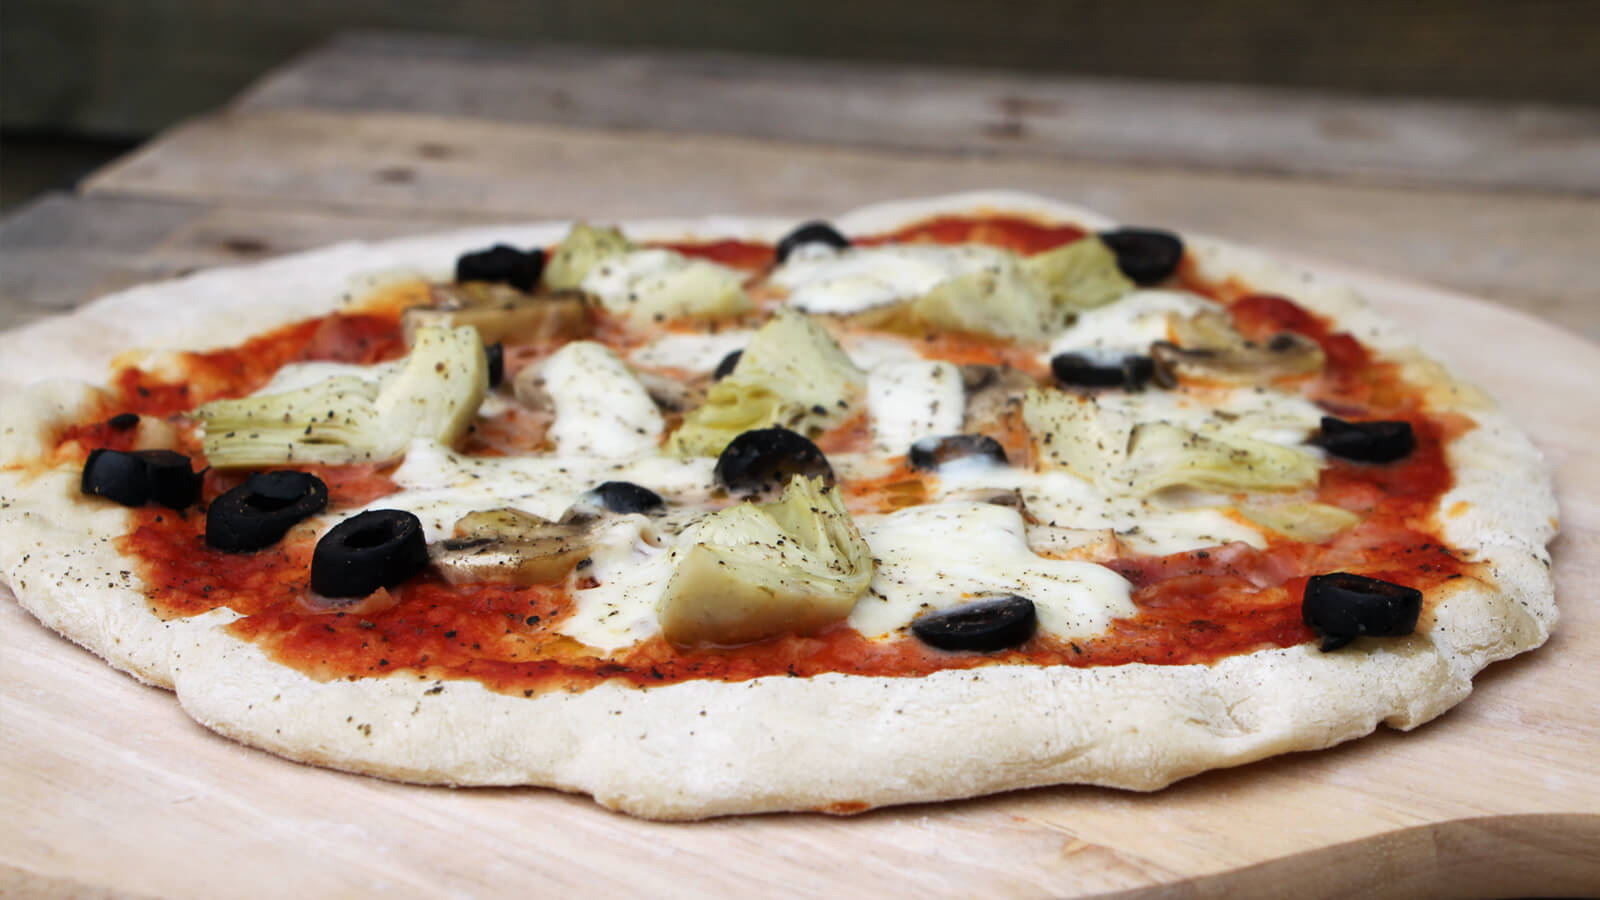 Heb jij al een pizzasteen voor de BBQ? Dan kun je deze Pizza Capricciosa zelf maken!